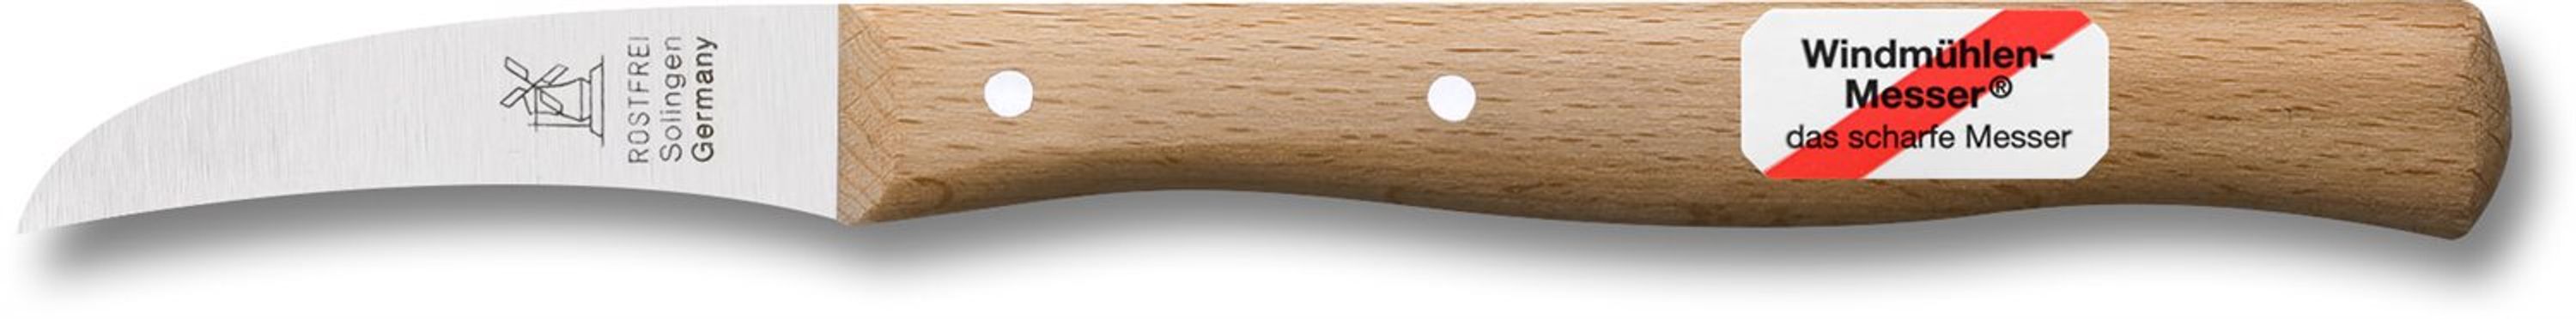 Windmühlenmesser Vogelschnabel Schälmesser, gebogene Klinge, mit Griff oval, rostfrei Rotbuche